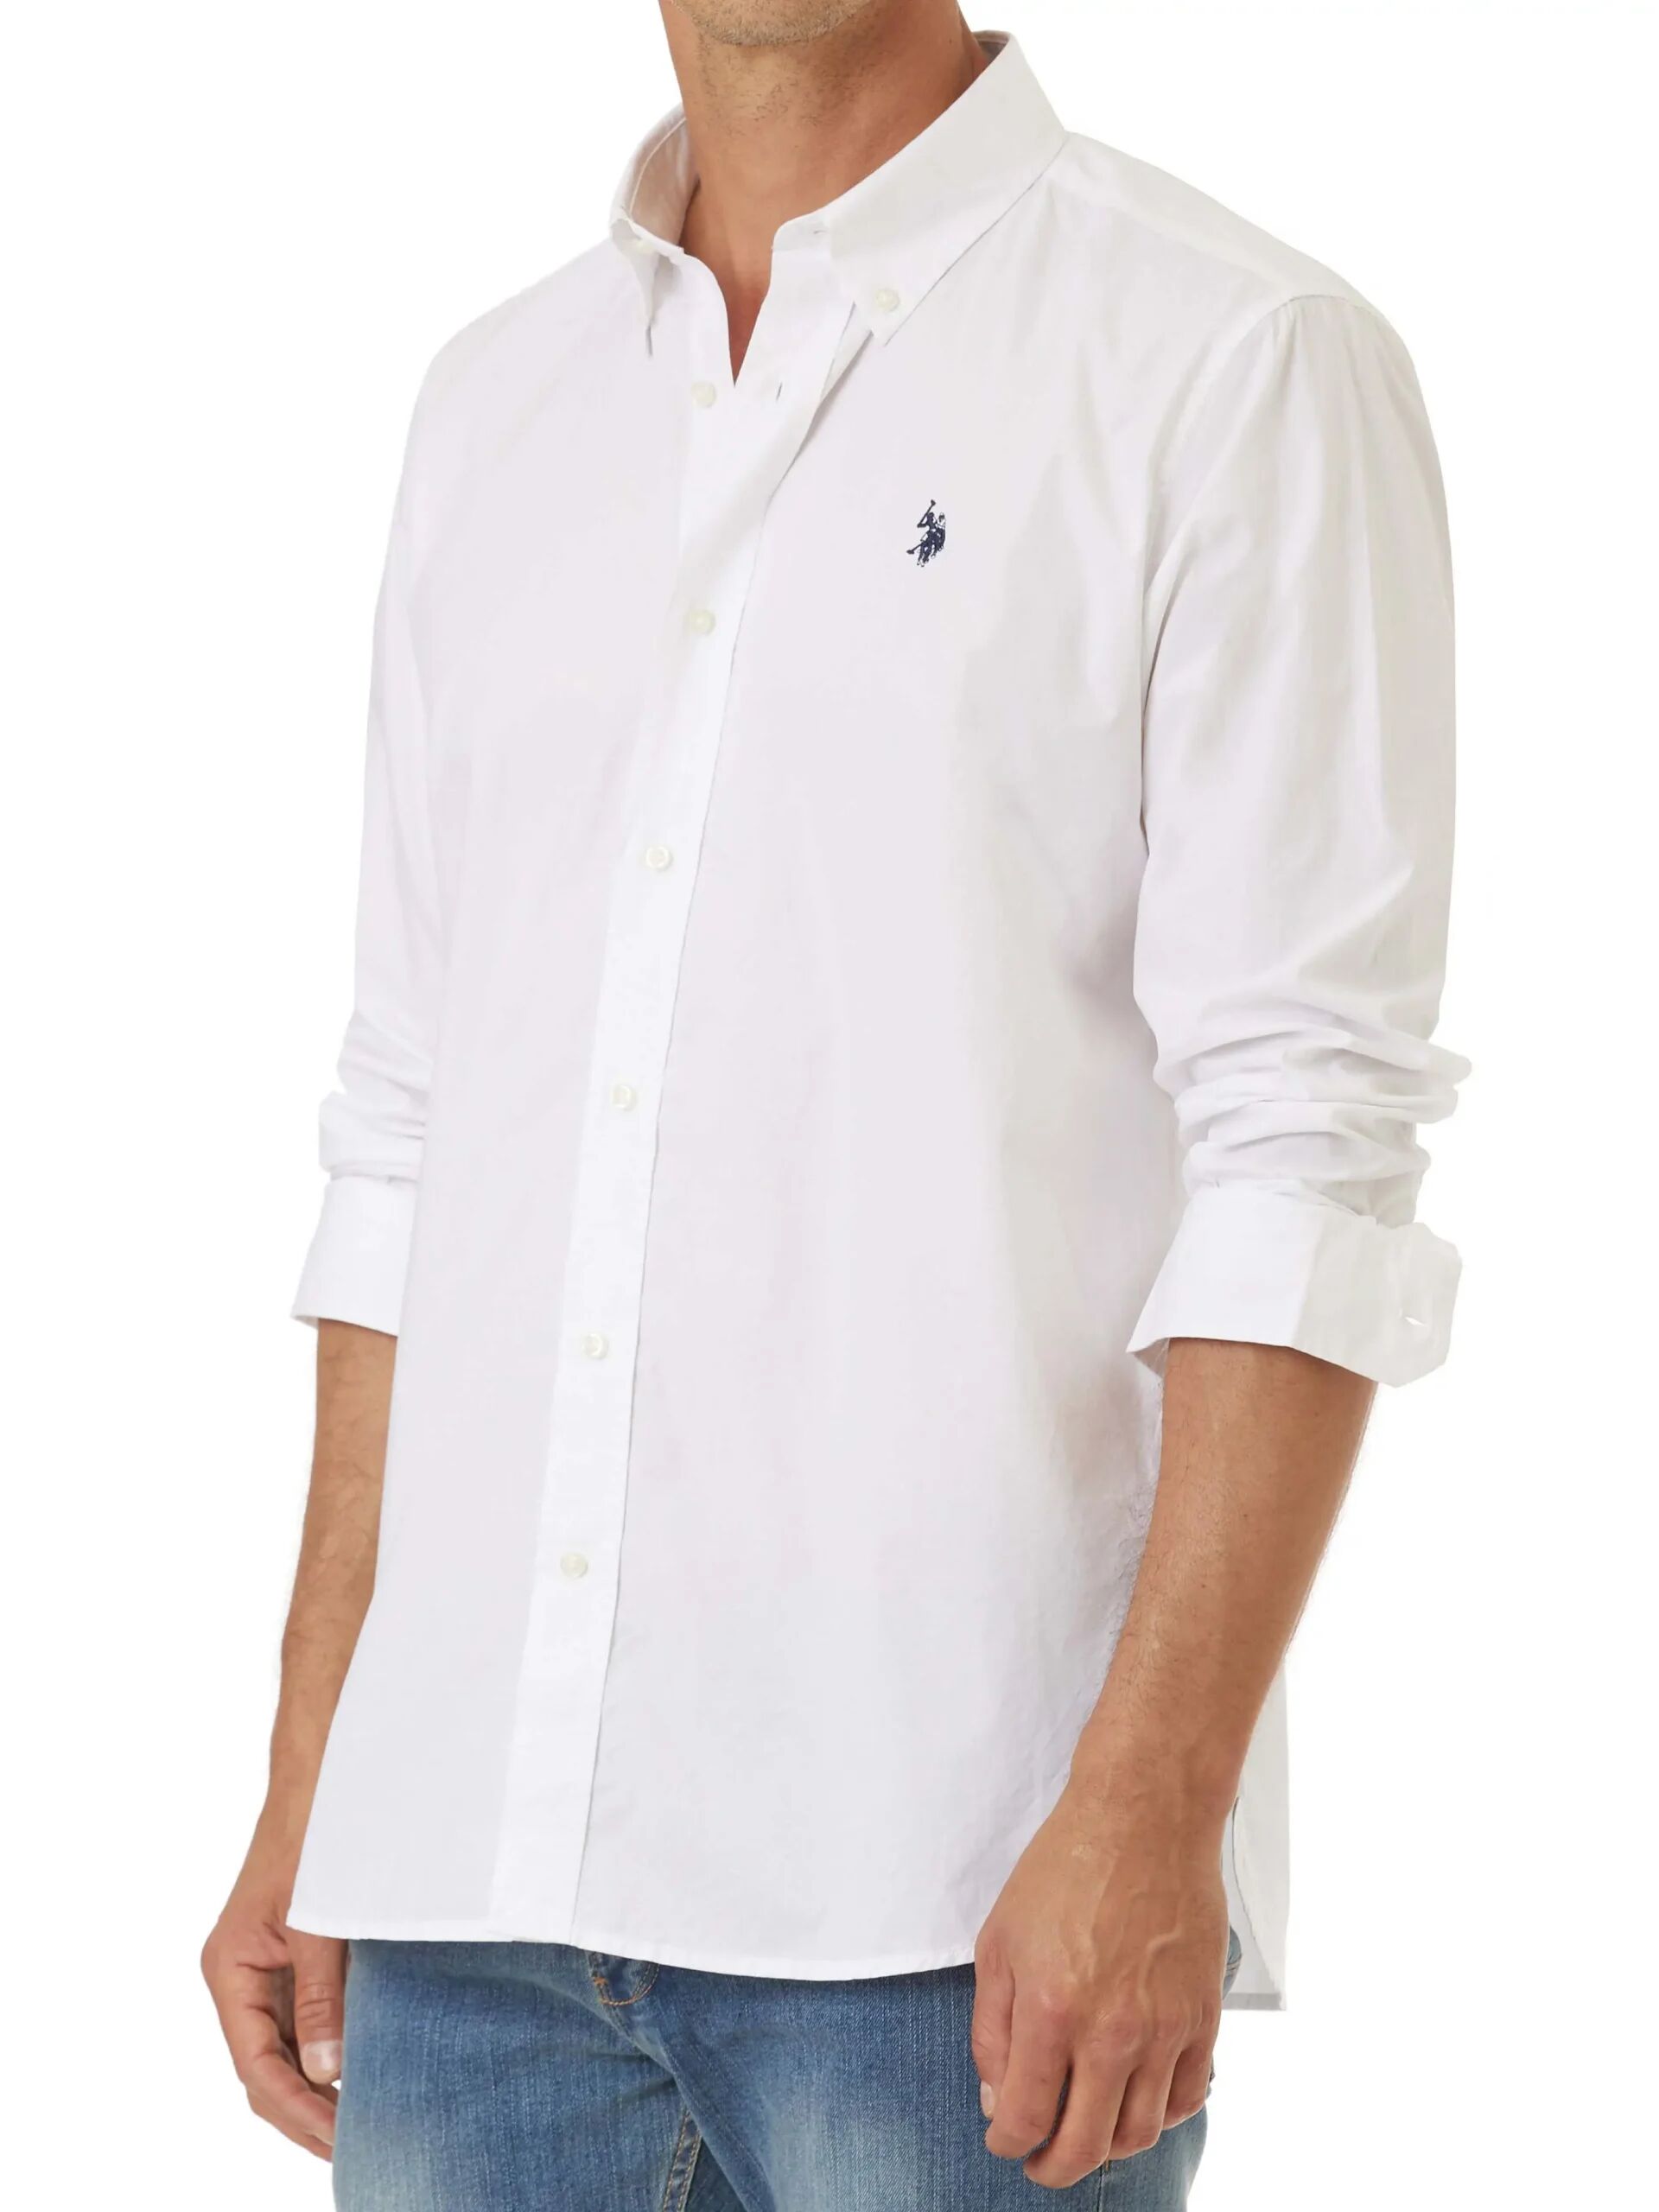 Us Polo Assn. Camicia Uomo Colore Bianco BIANCO S